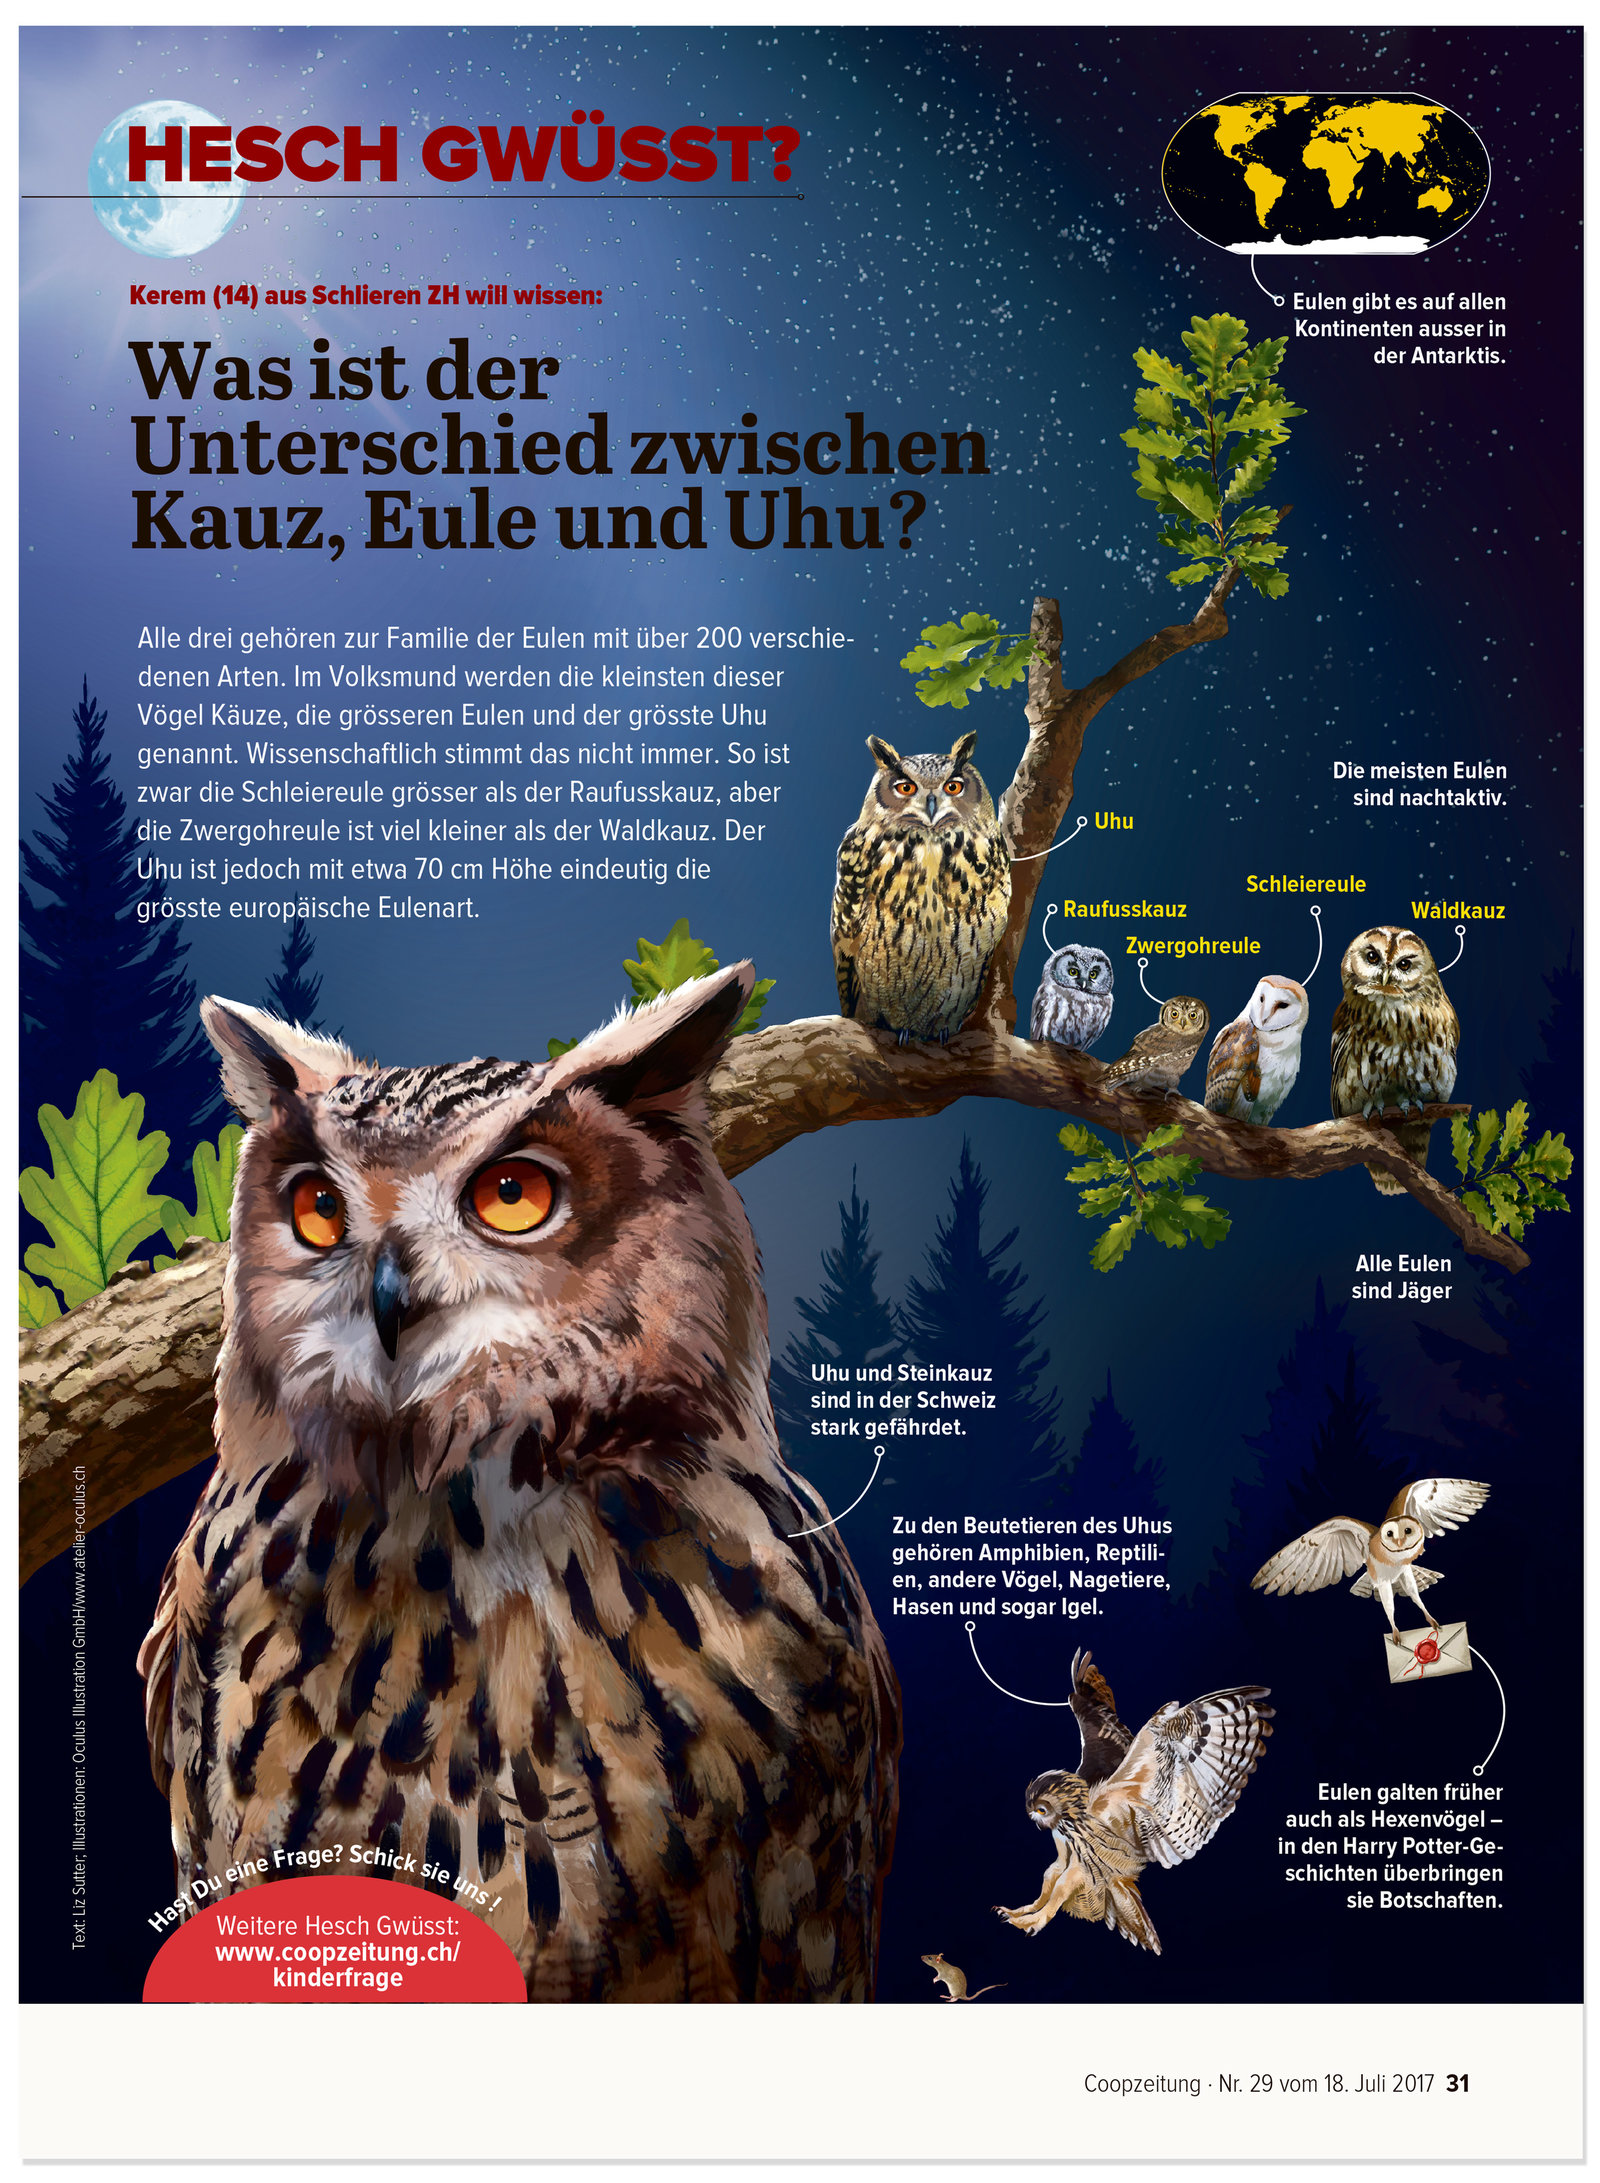 oculus-illustration-coopzeitung-hesch-gwuesst-eule-kauz-uhu